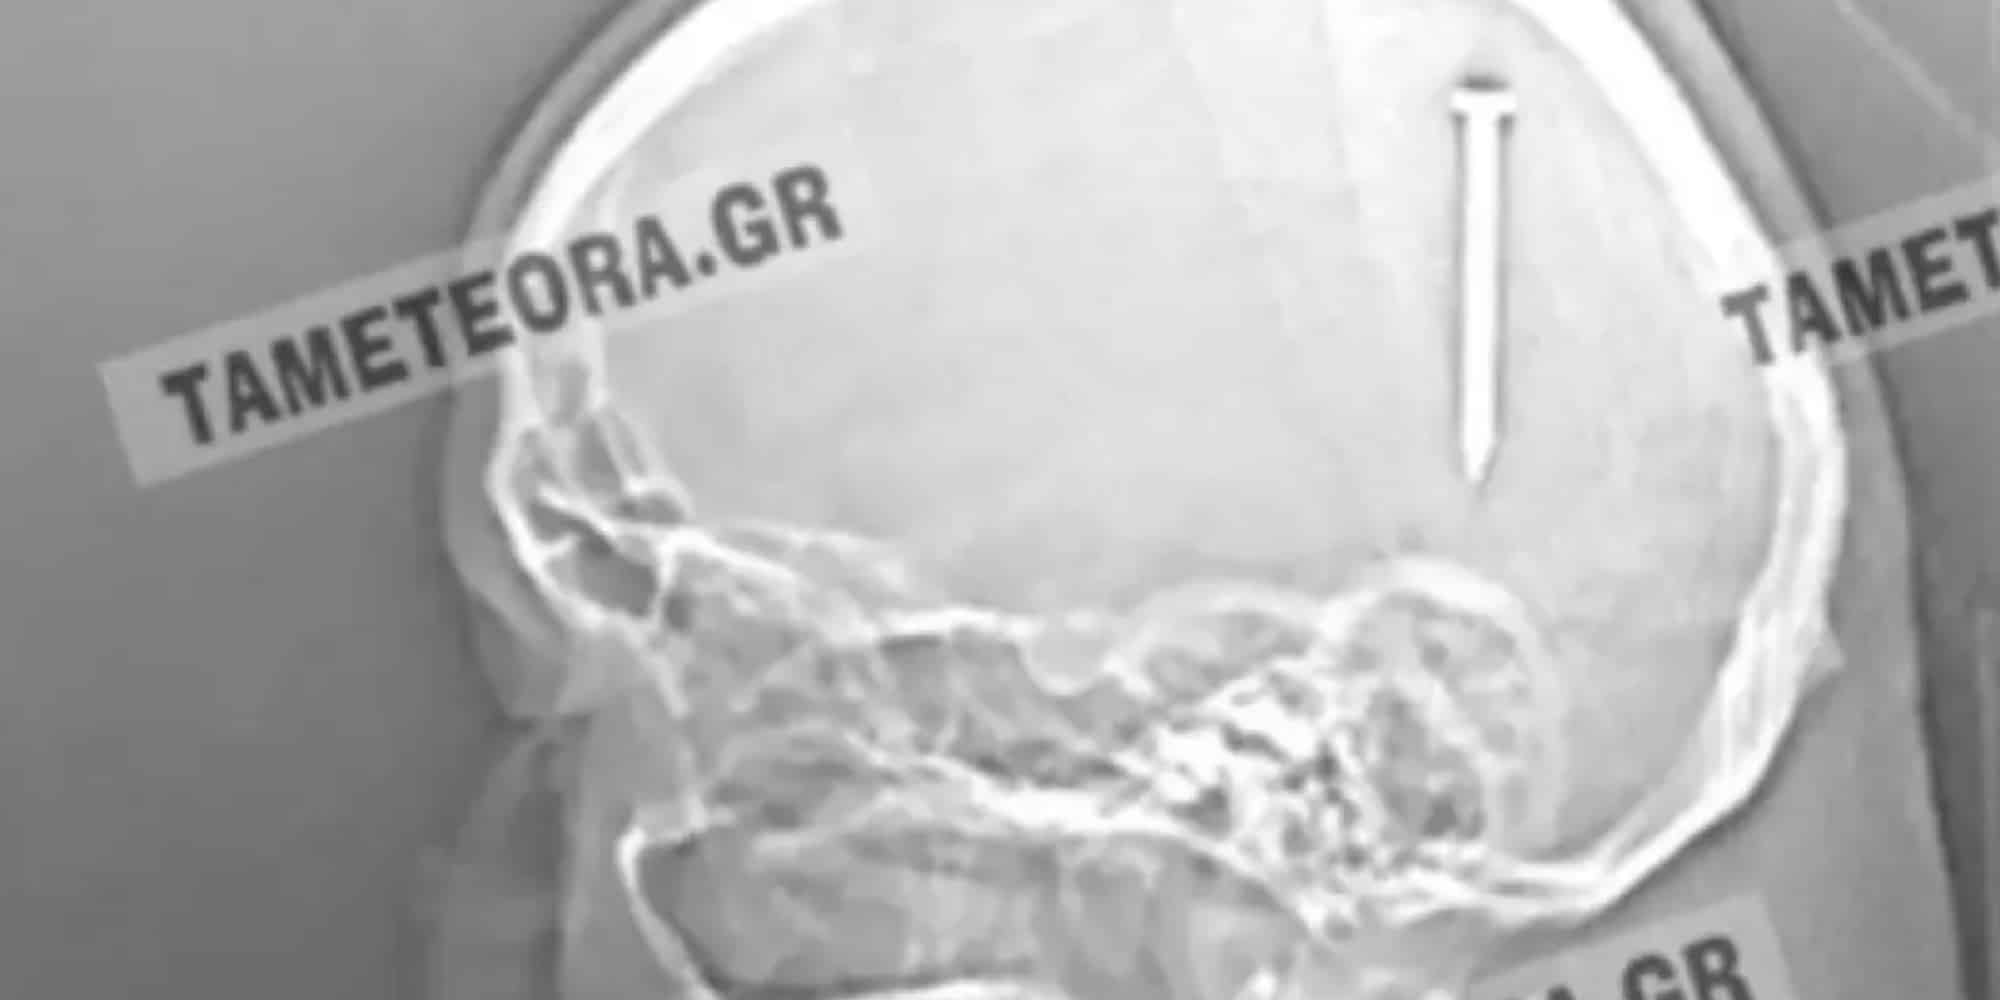 Καρφί 5 εκατοστών σφηνώθηκε στο κεφάλι άνδρα στην Καλαμπάκα (εικόνες)